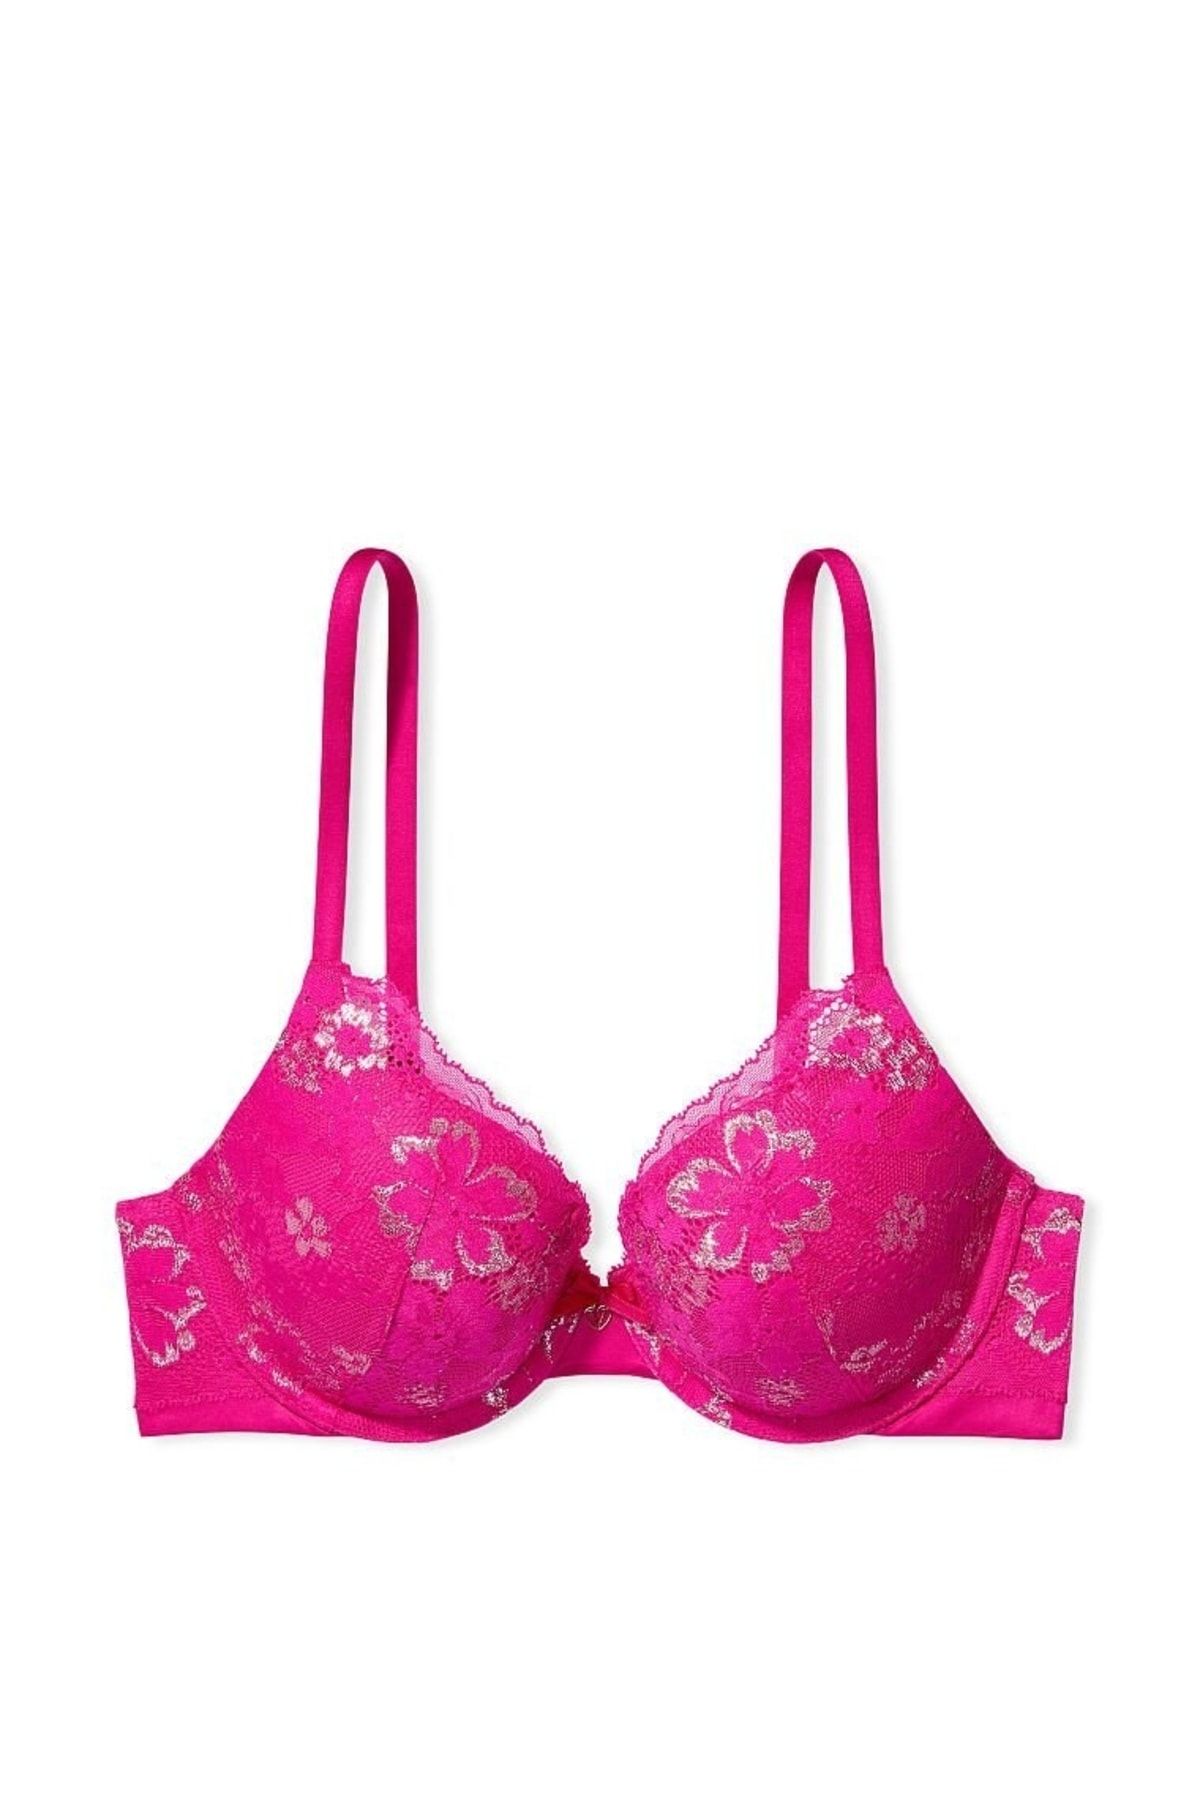 Victoria's Secret, Intimates & Sleepwear, Bin 6 Victoria Secret Lacey Semi  Sheer Bra Underwired Victorian Pink Size 34dd